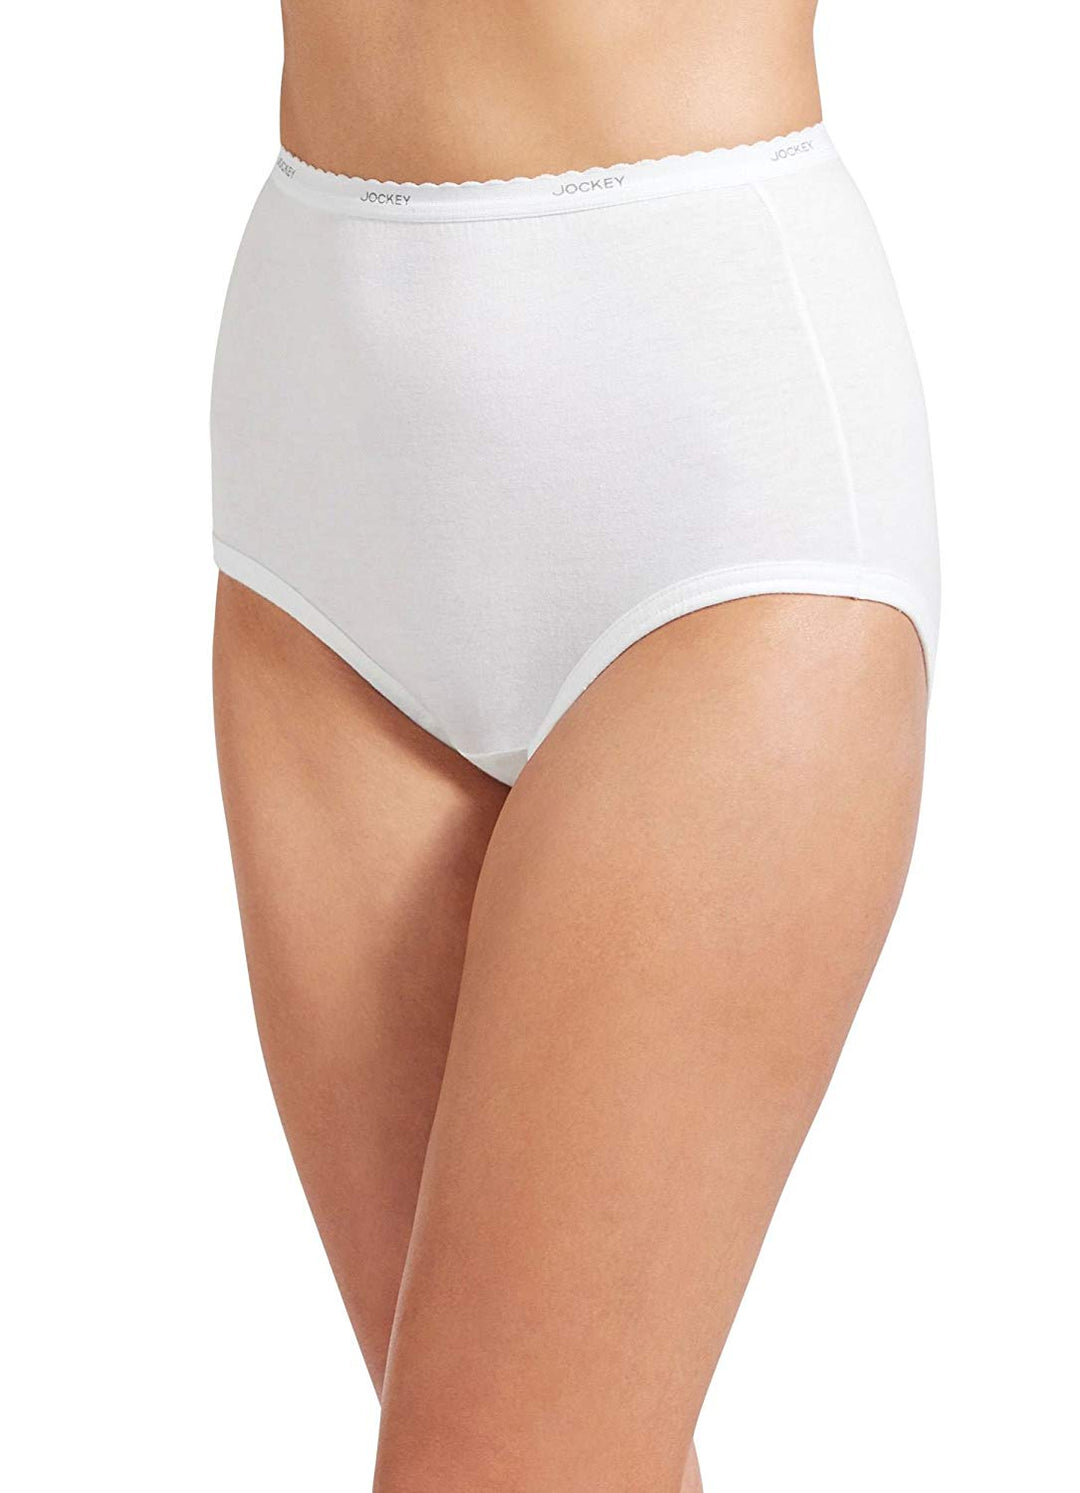 7Pcs Underwear Women Plus Size Panties Girls Briefs Sexy Lingeries Cueca  Intimates Calcinhas Cotton Shorts Underpants Cute Panty